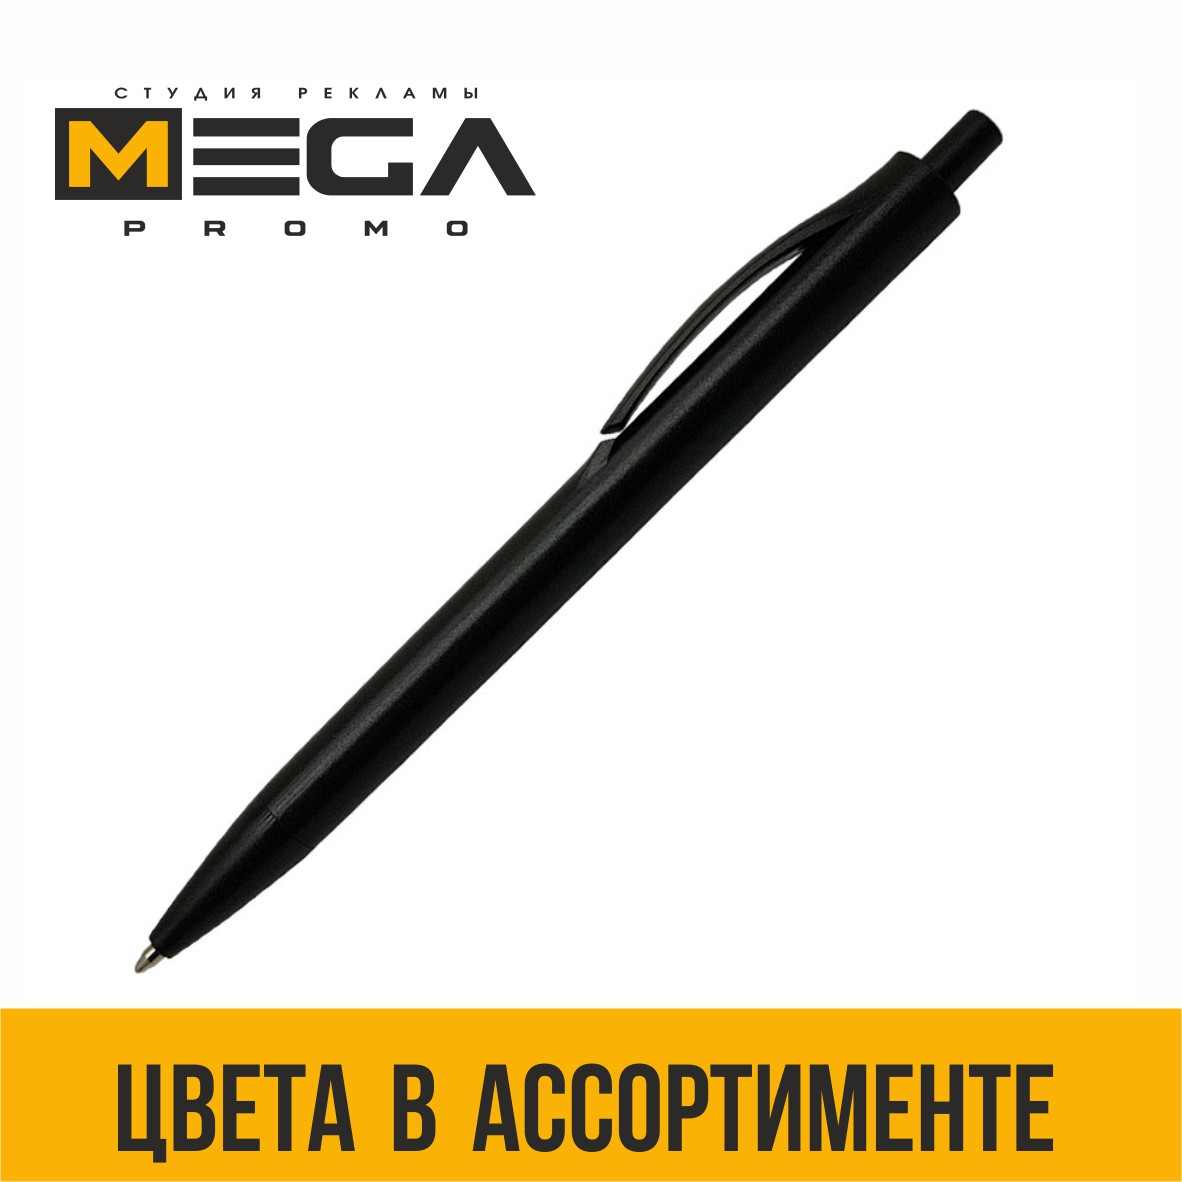 Ручка пластиковая с Вашим логотипом (полноцветная УФ печать на ручках)